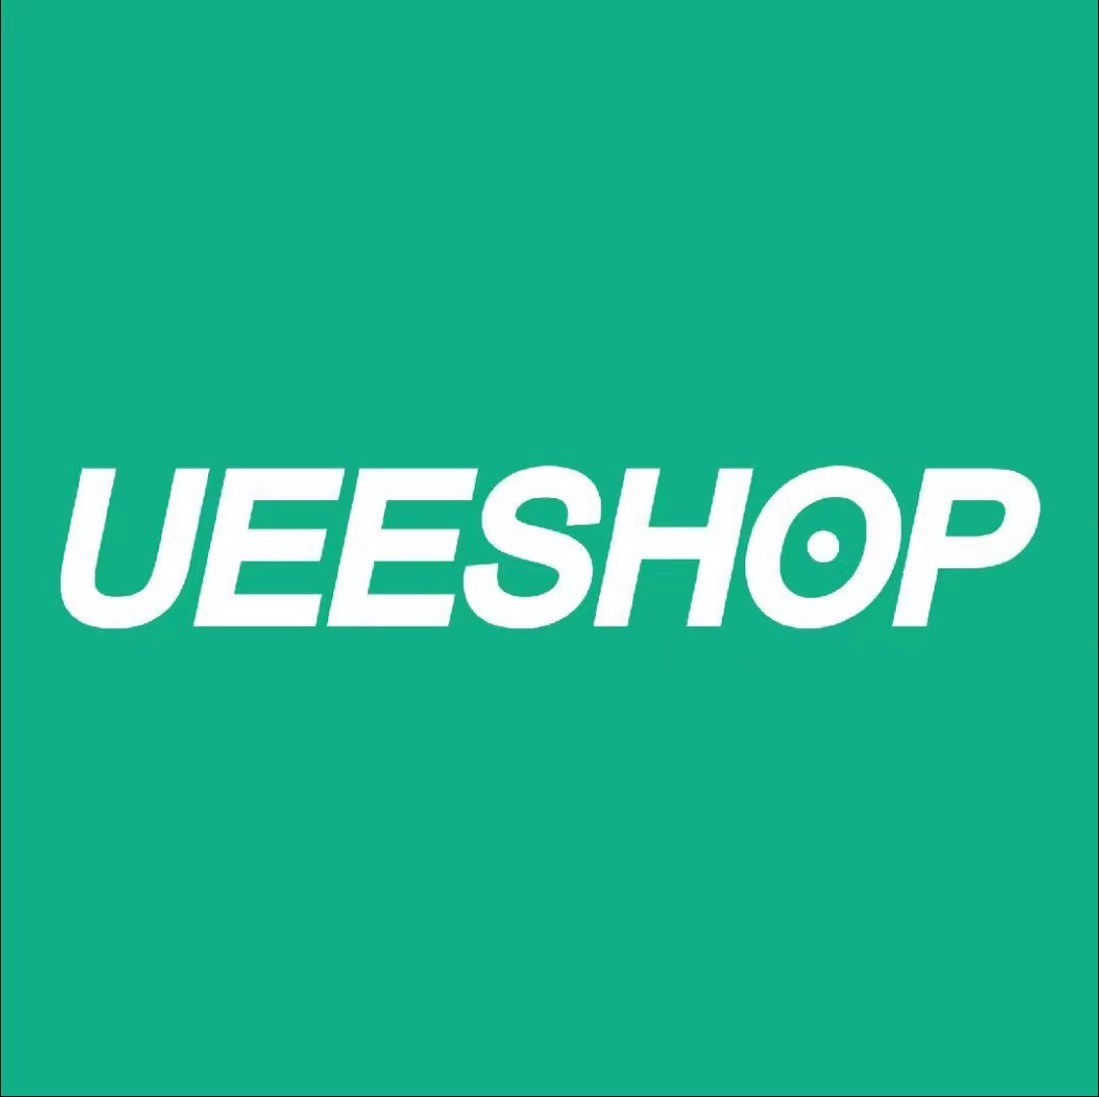 UeeShop